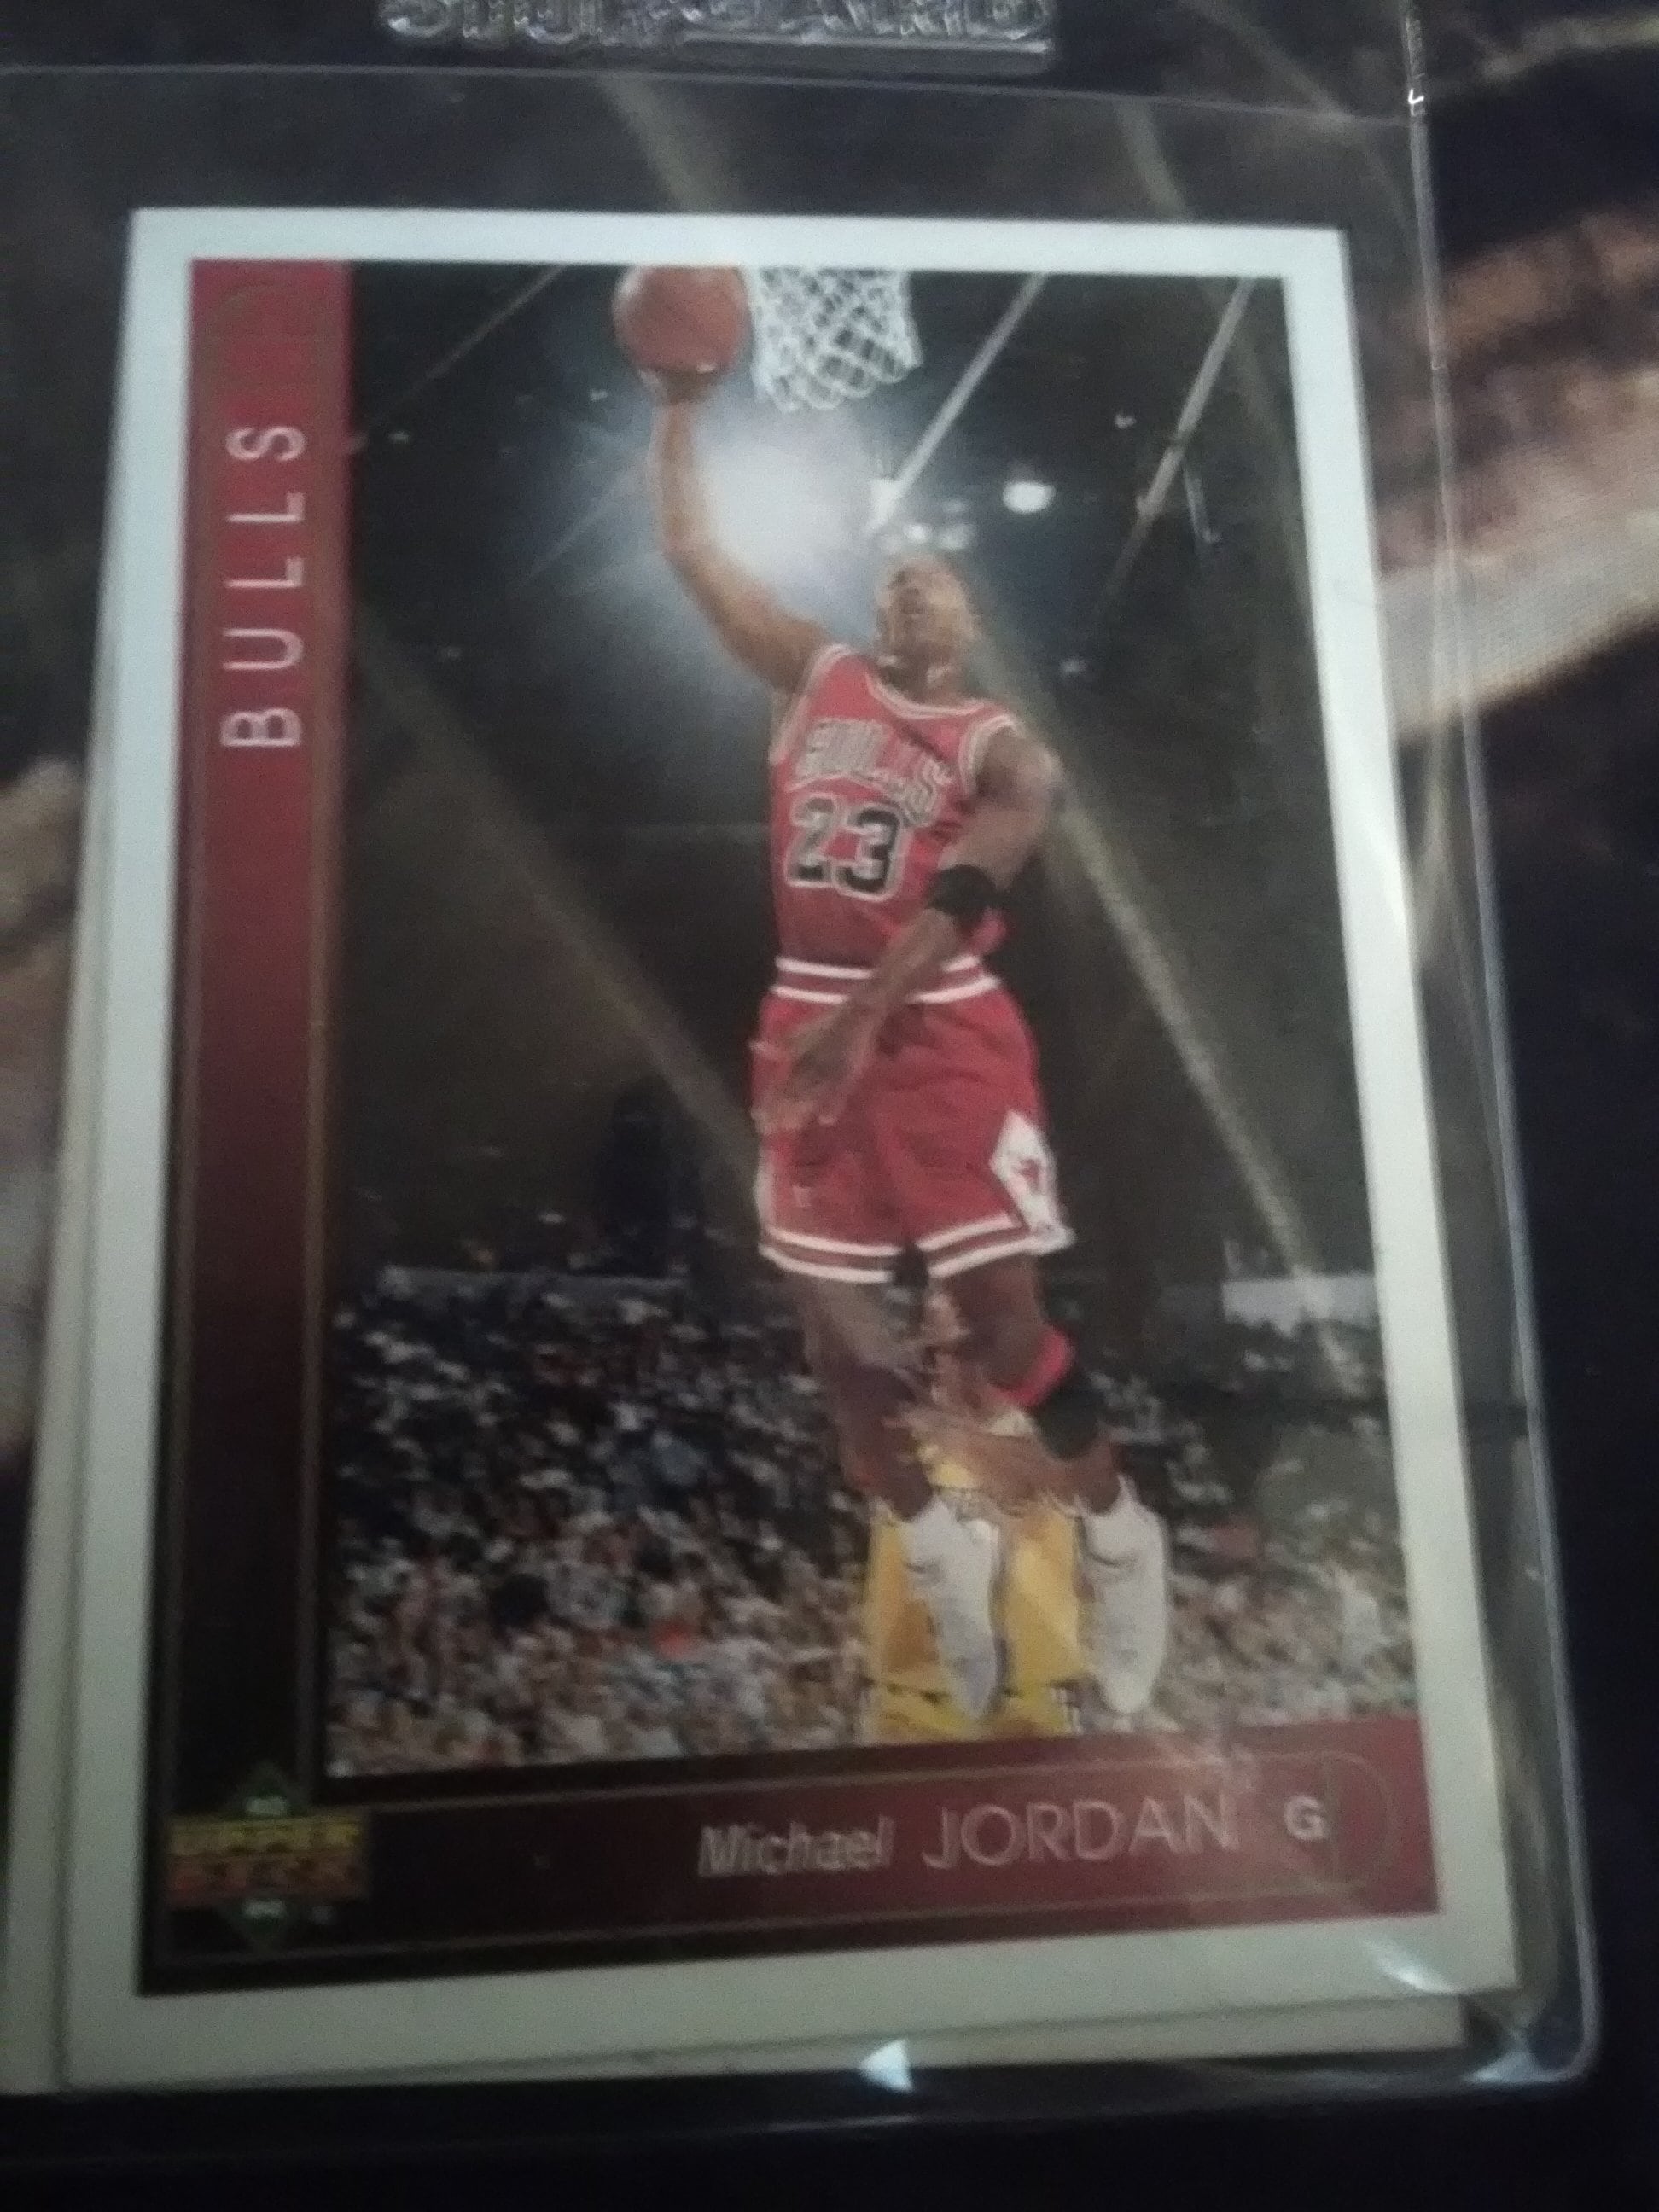 Michael Jordan Upper Deck 93-94 Card no. 23 mint condition original